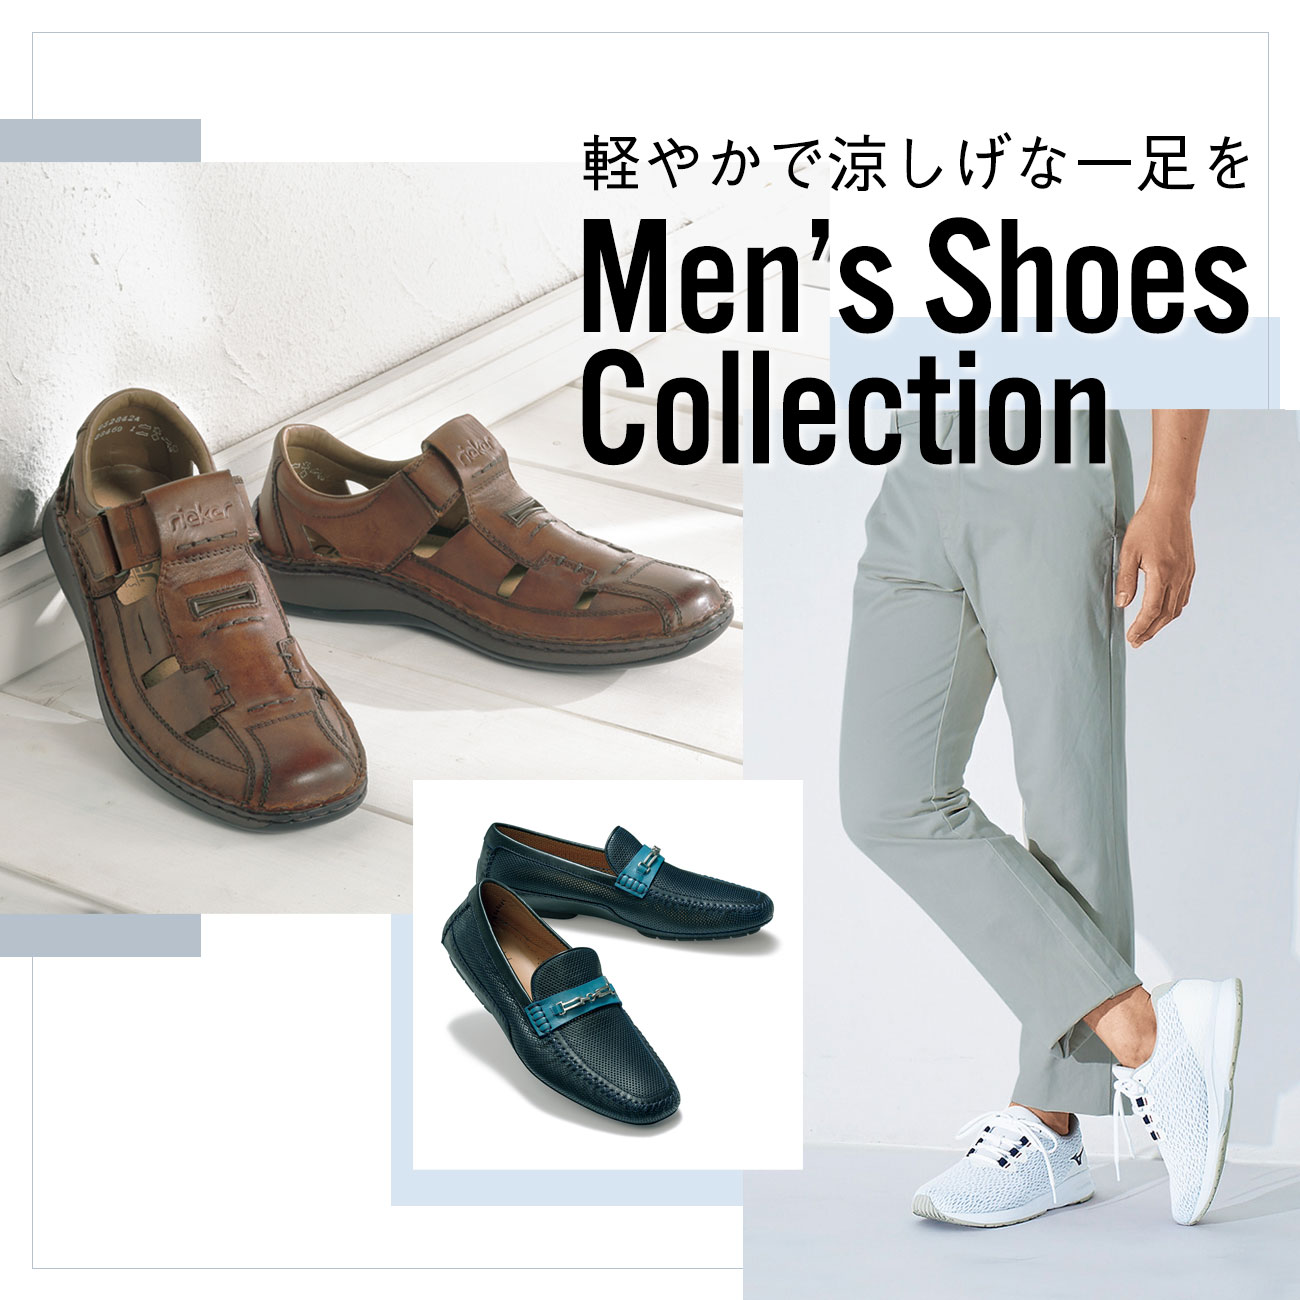 【特集】Men's Shoes Collection